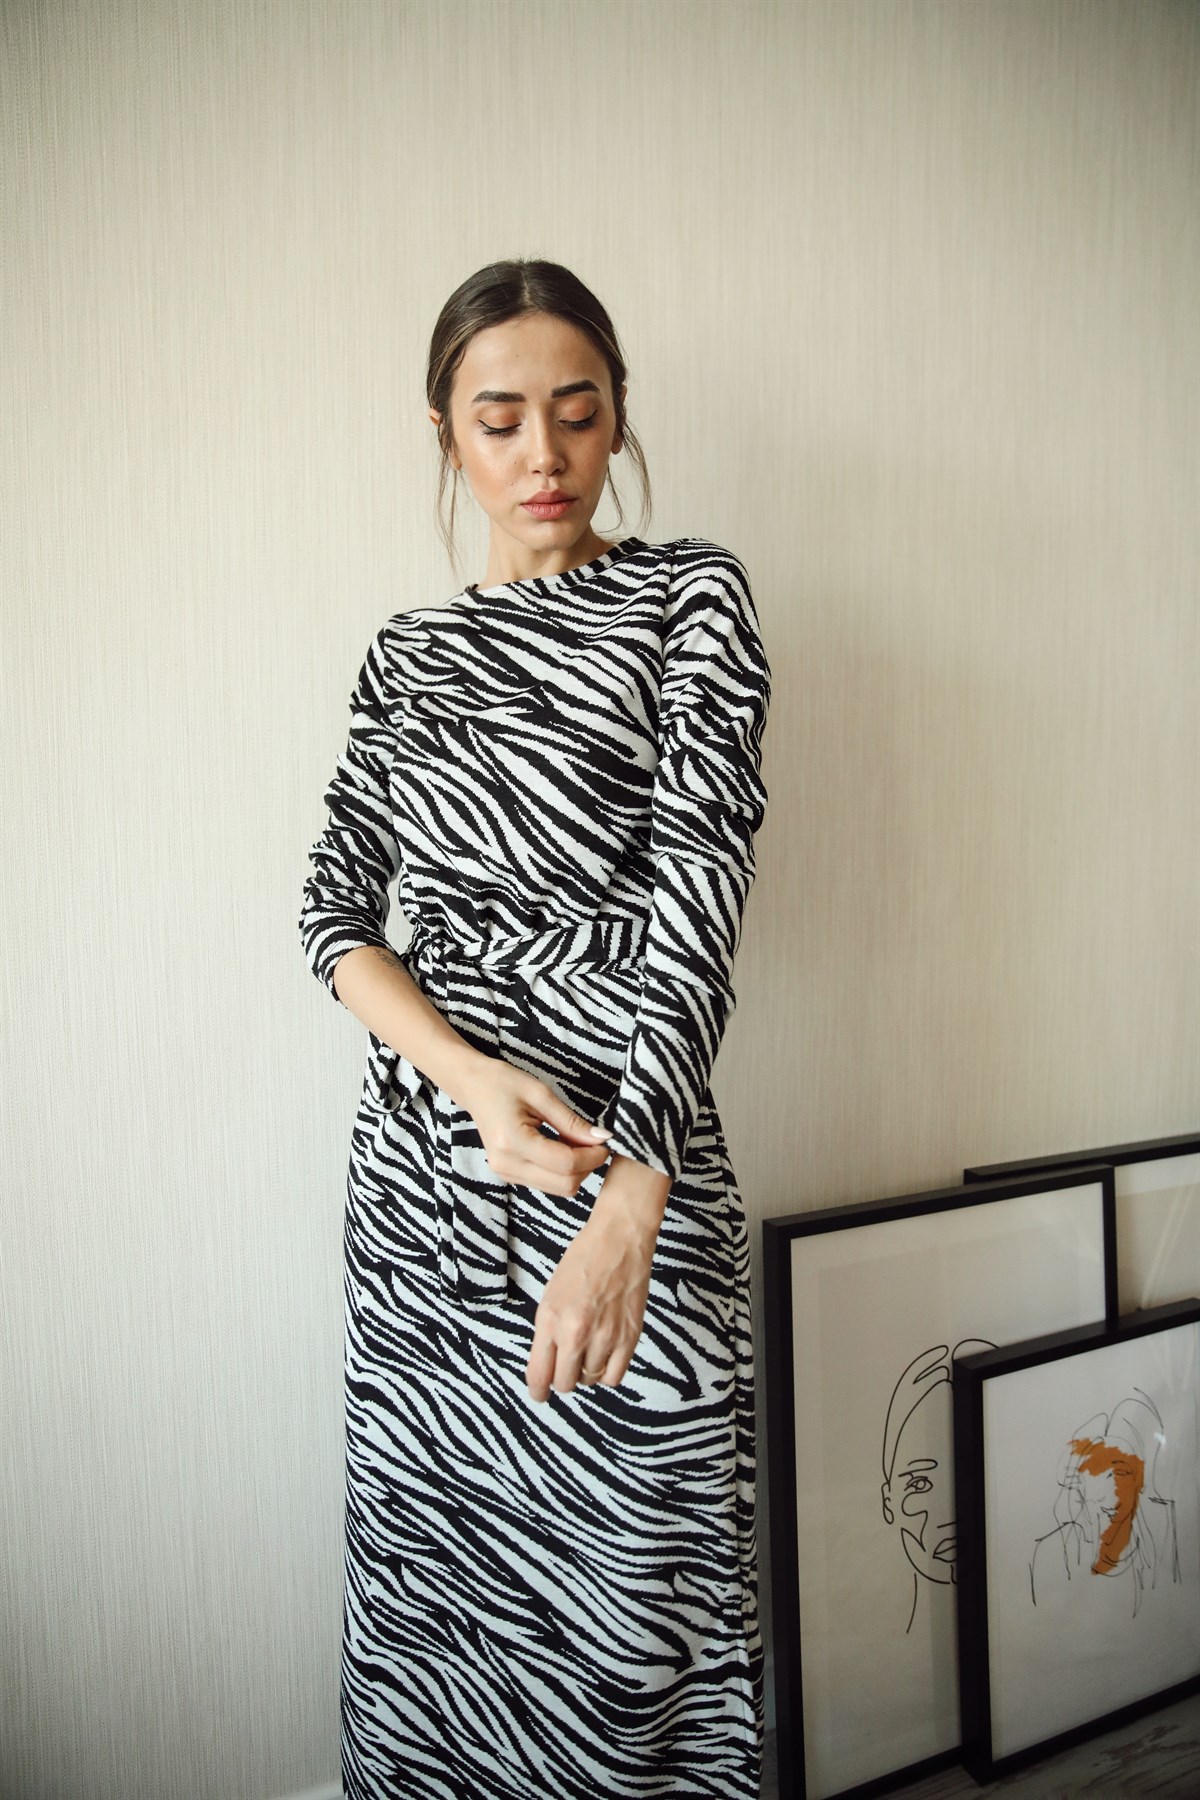 Siyah Beyaz Zebra Desenli Minik Yırtmaçlı Elbise 89,00 TL